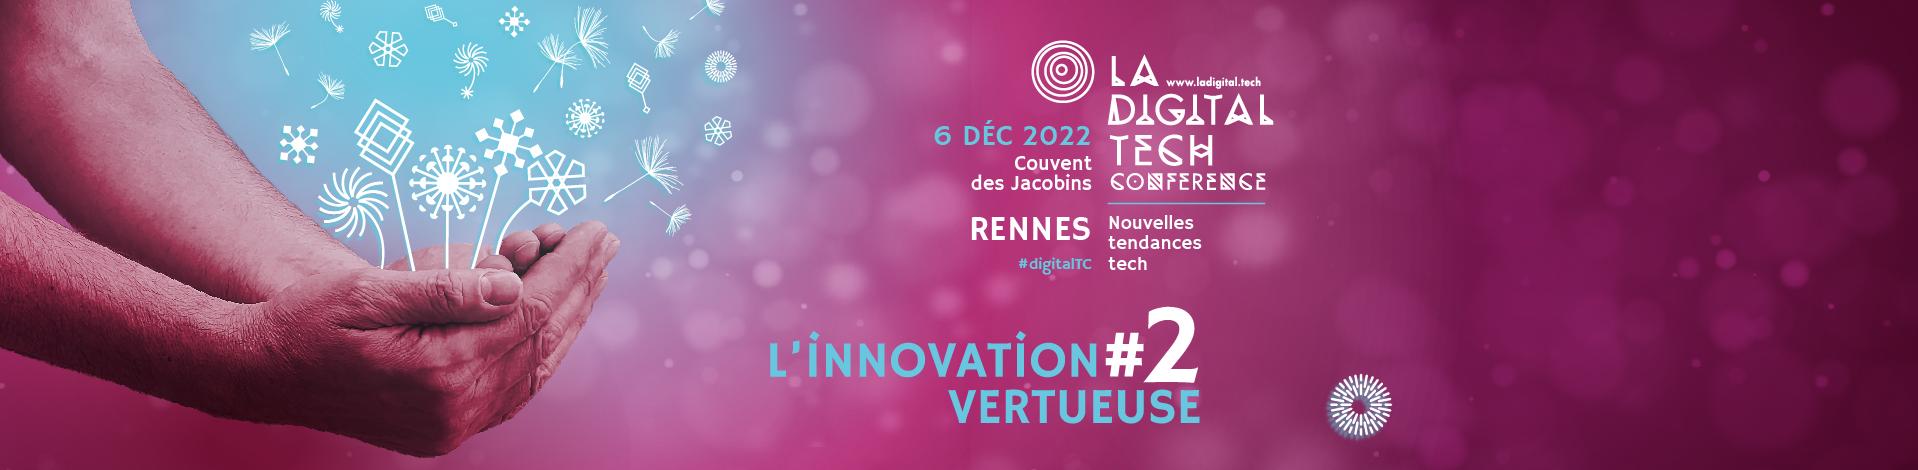 bandeau de l'affiche officielle de la digital tech conference 